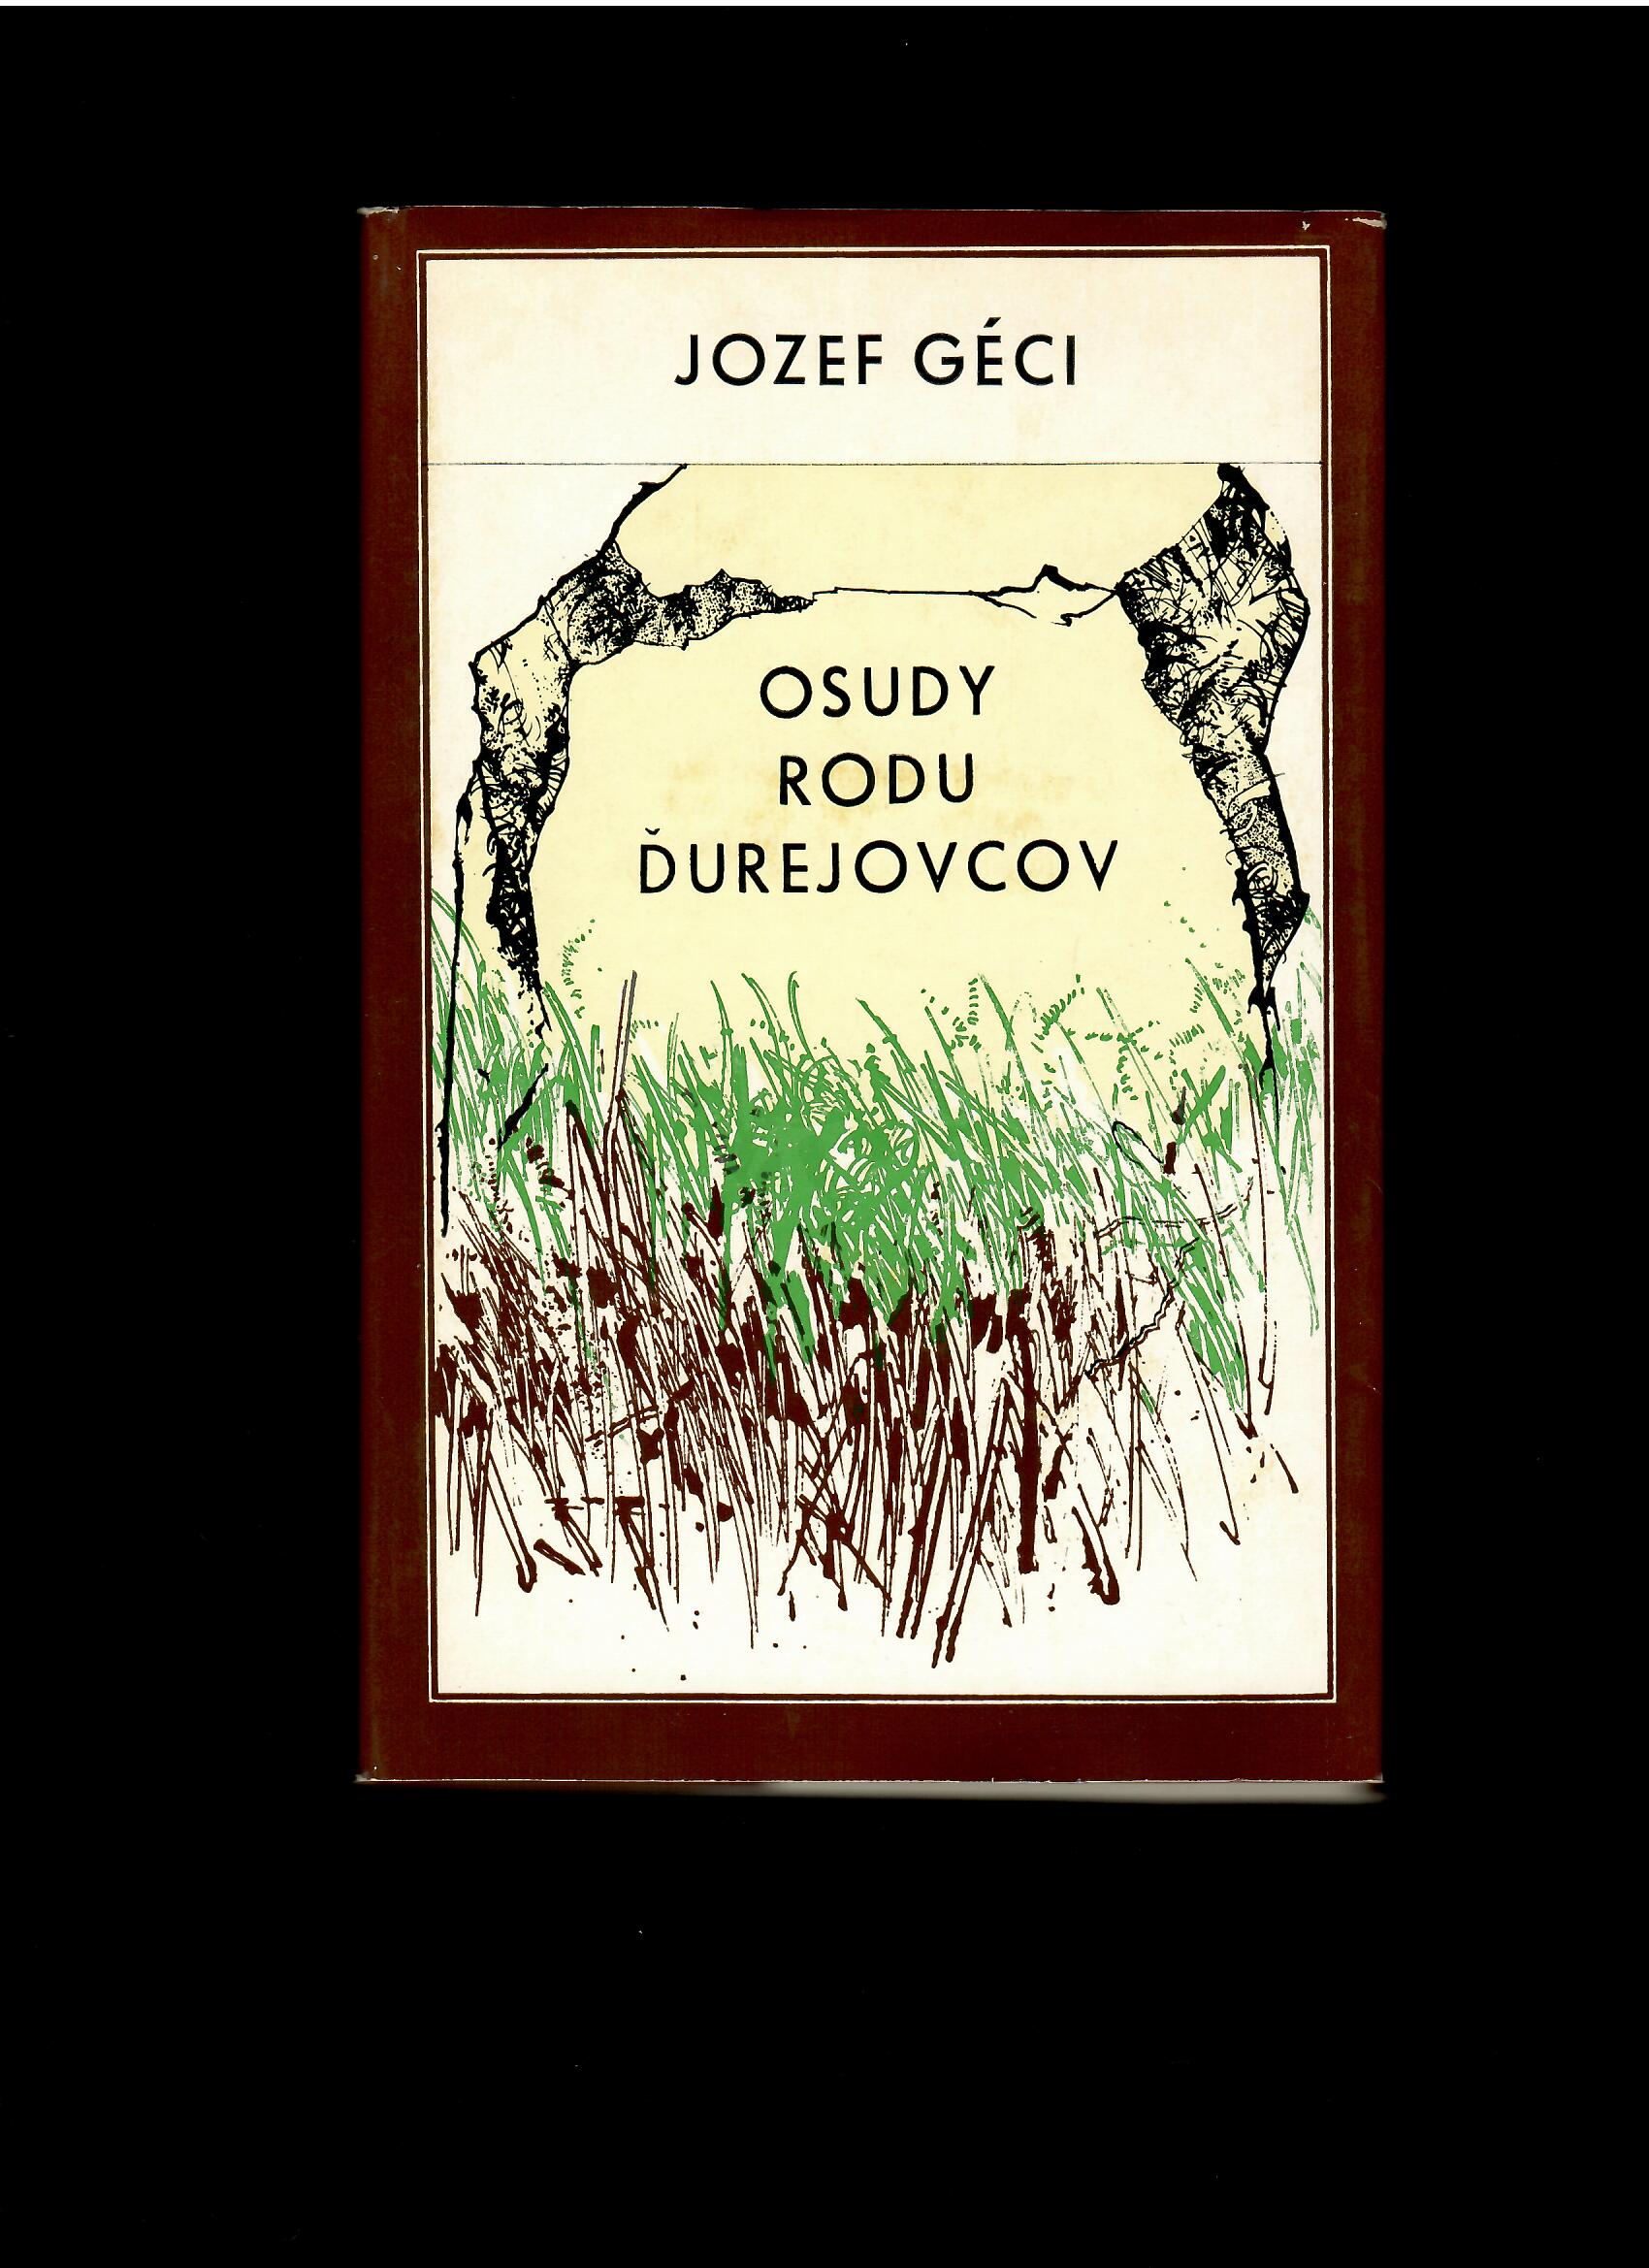 Jozef Géci: Osudy rodu Ďurejovcov